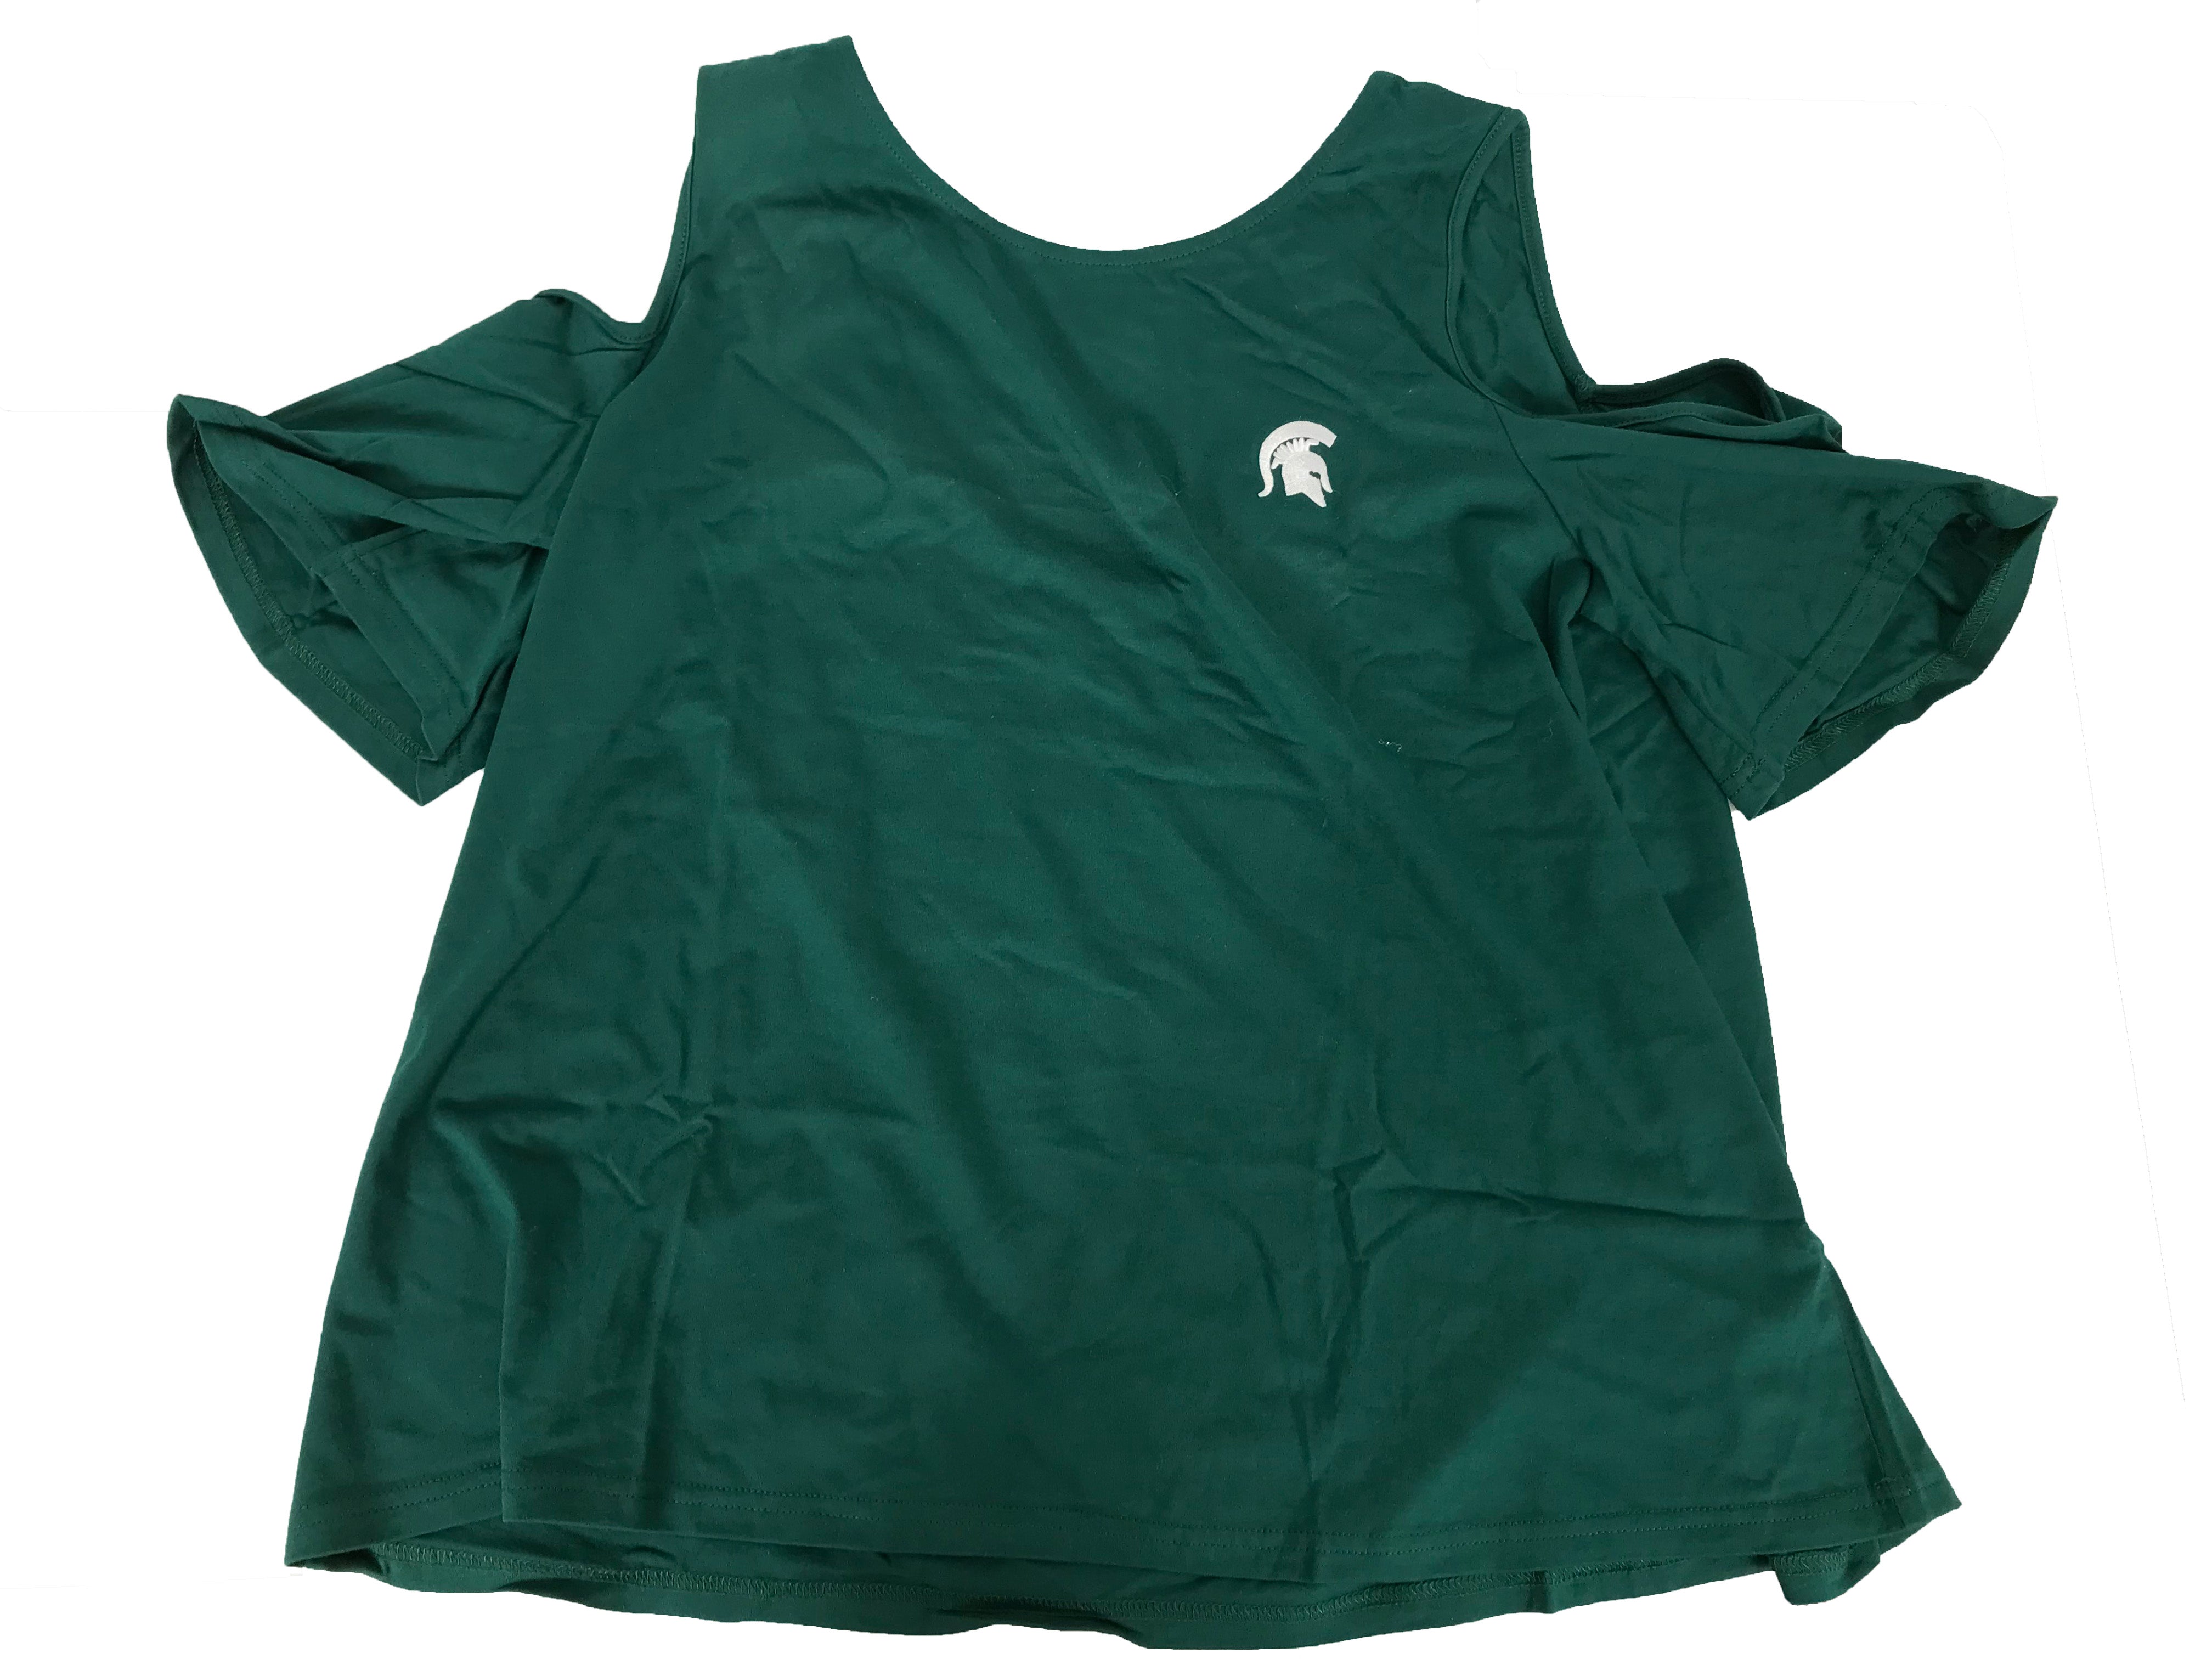 MSU Cutout Shoulder Shirt Women's Size Small